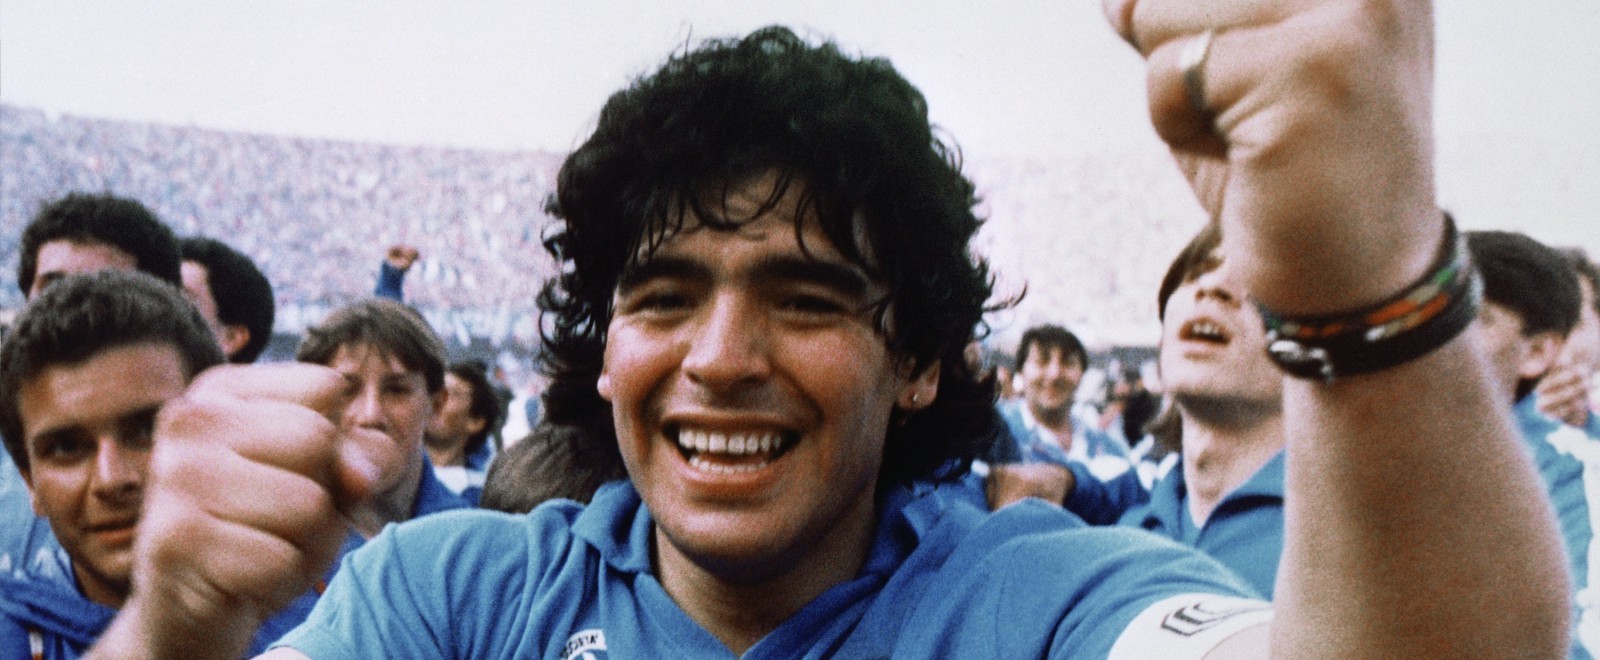 Diego Maradona film